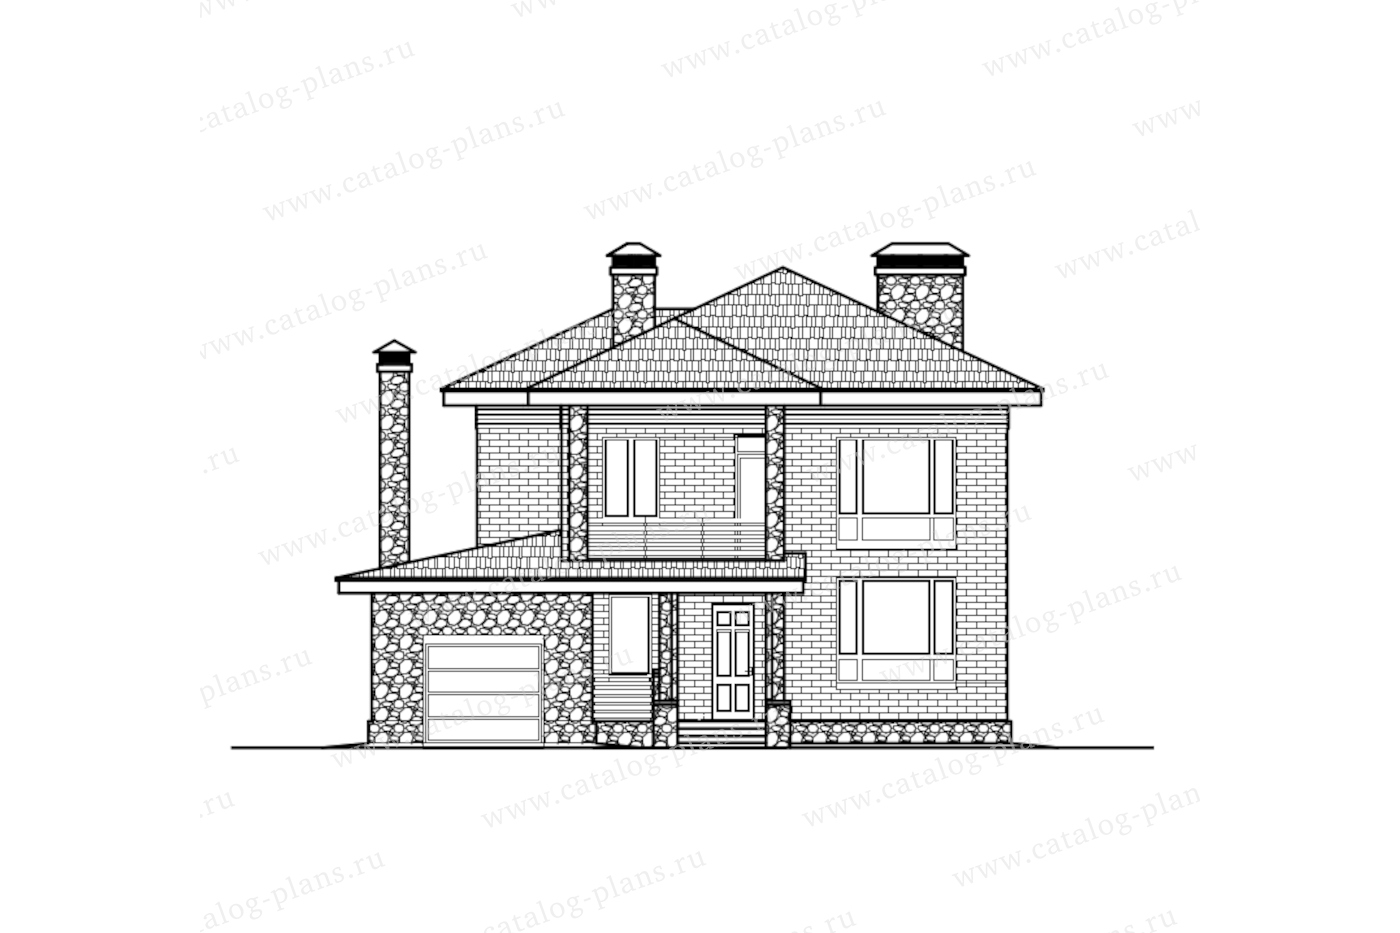 Проект 59-93TCK2L, жилой дом, материал - поризованный керамический блок 440, количество этажей - 2, архитектурный стиль - современный, фундамент - монолитная ж/б плита